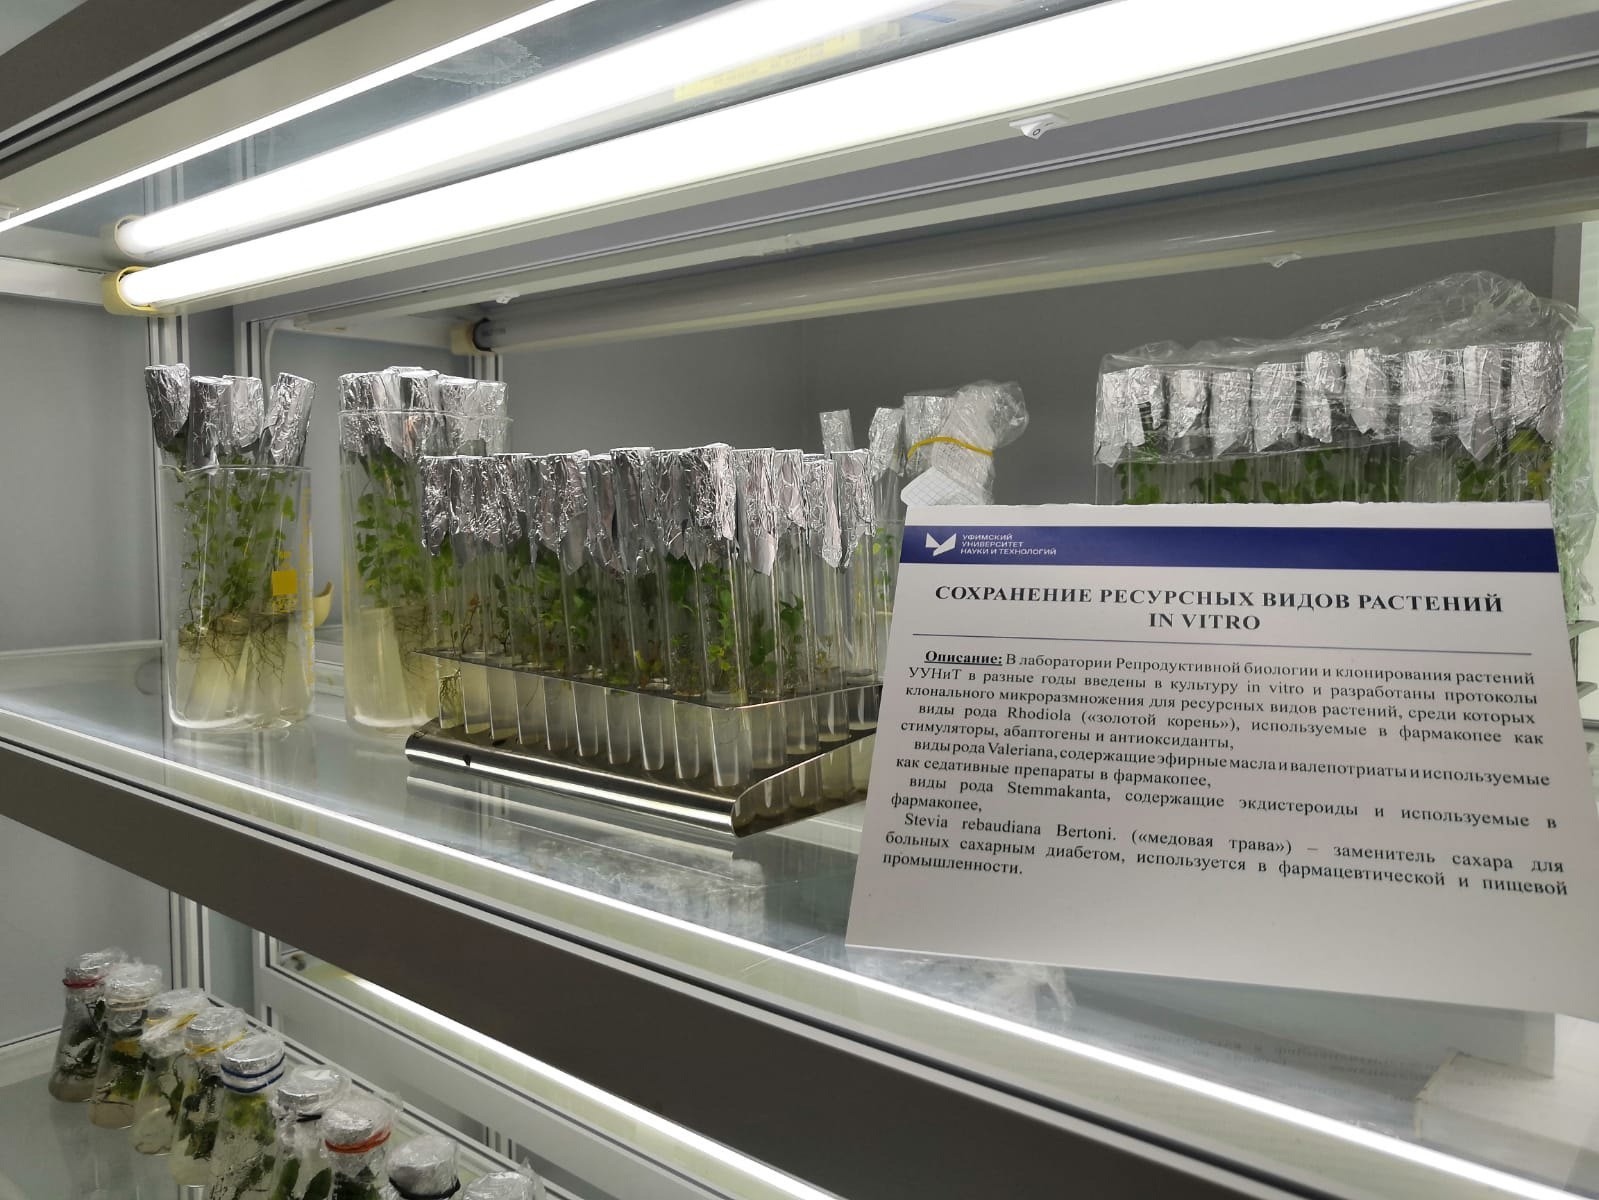 Лаборатория репродуктивной биологии и клонирования растений - точка маршрута "Авиценна"